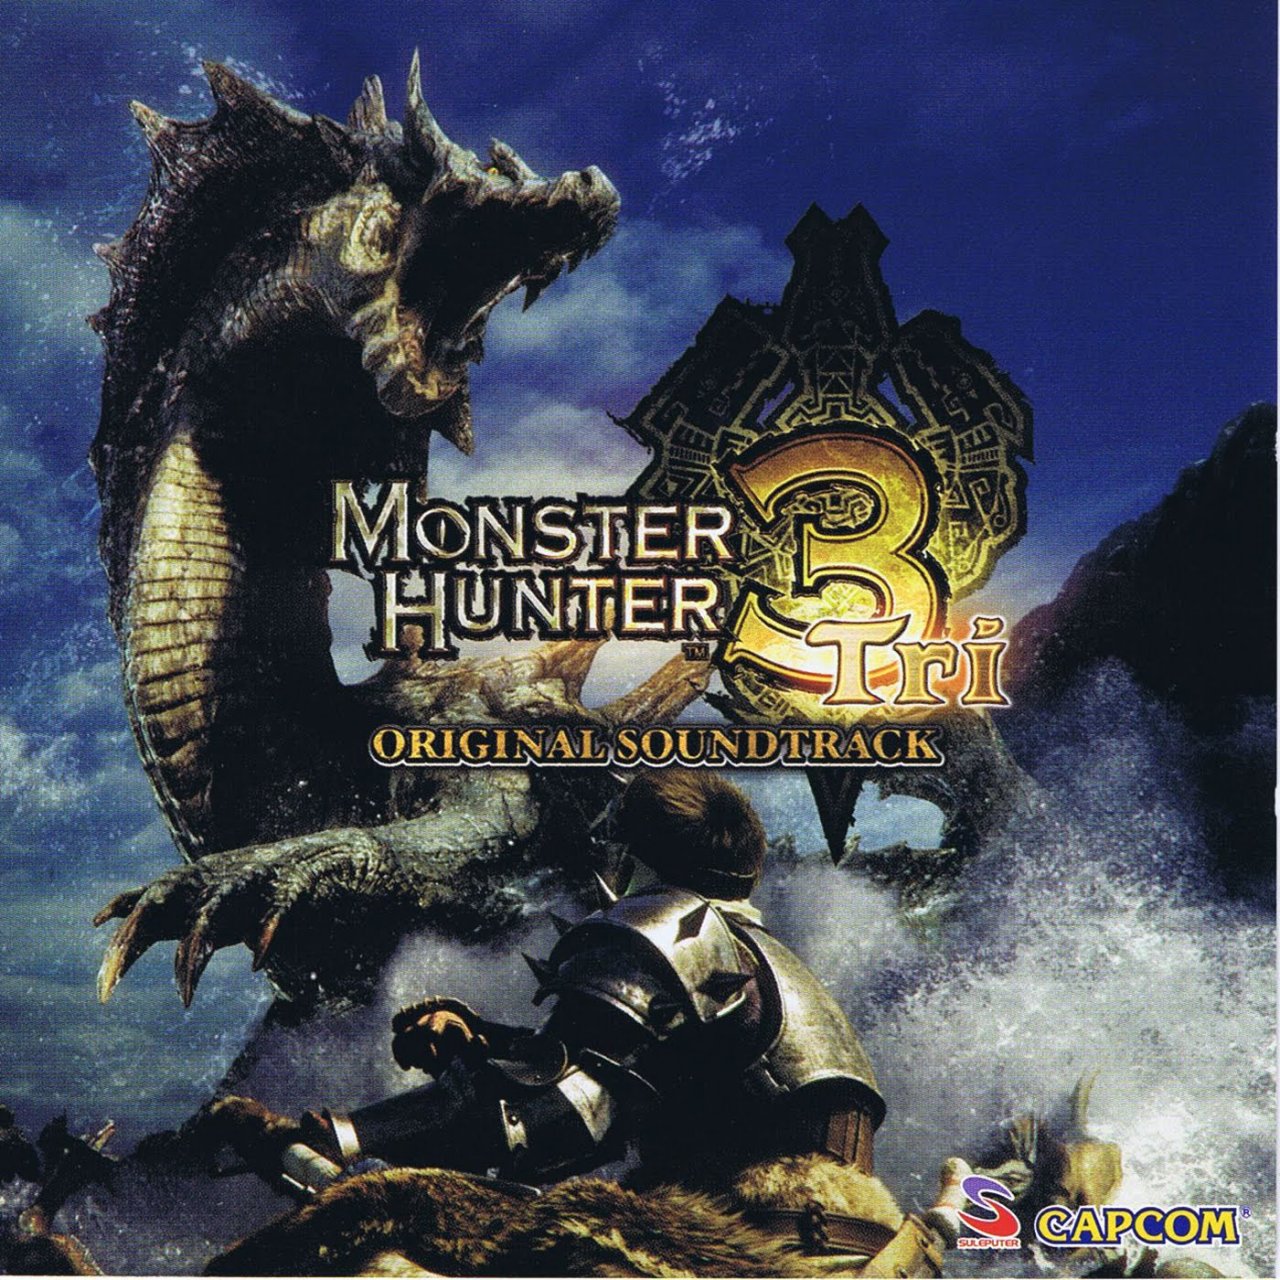 monsterhunter3